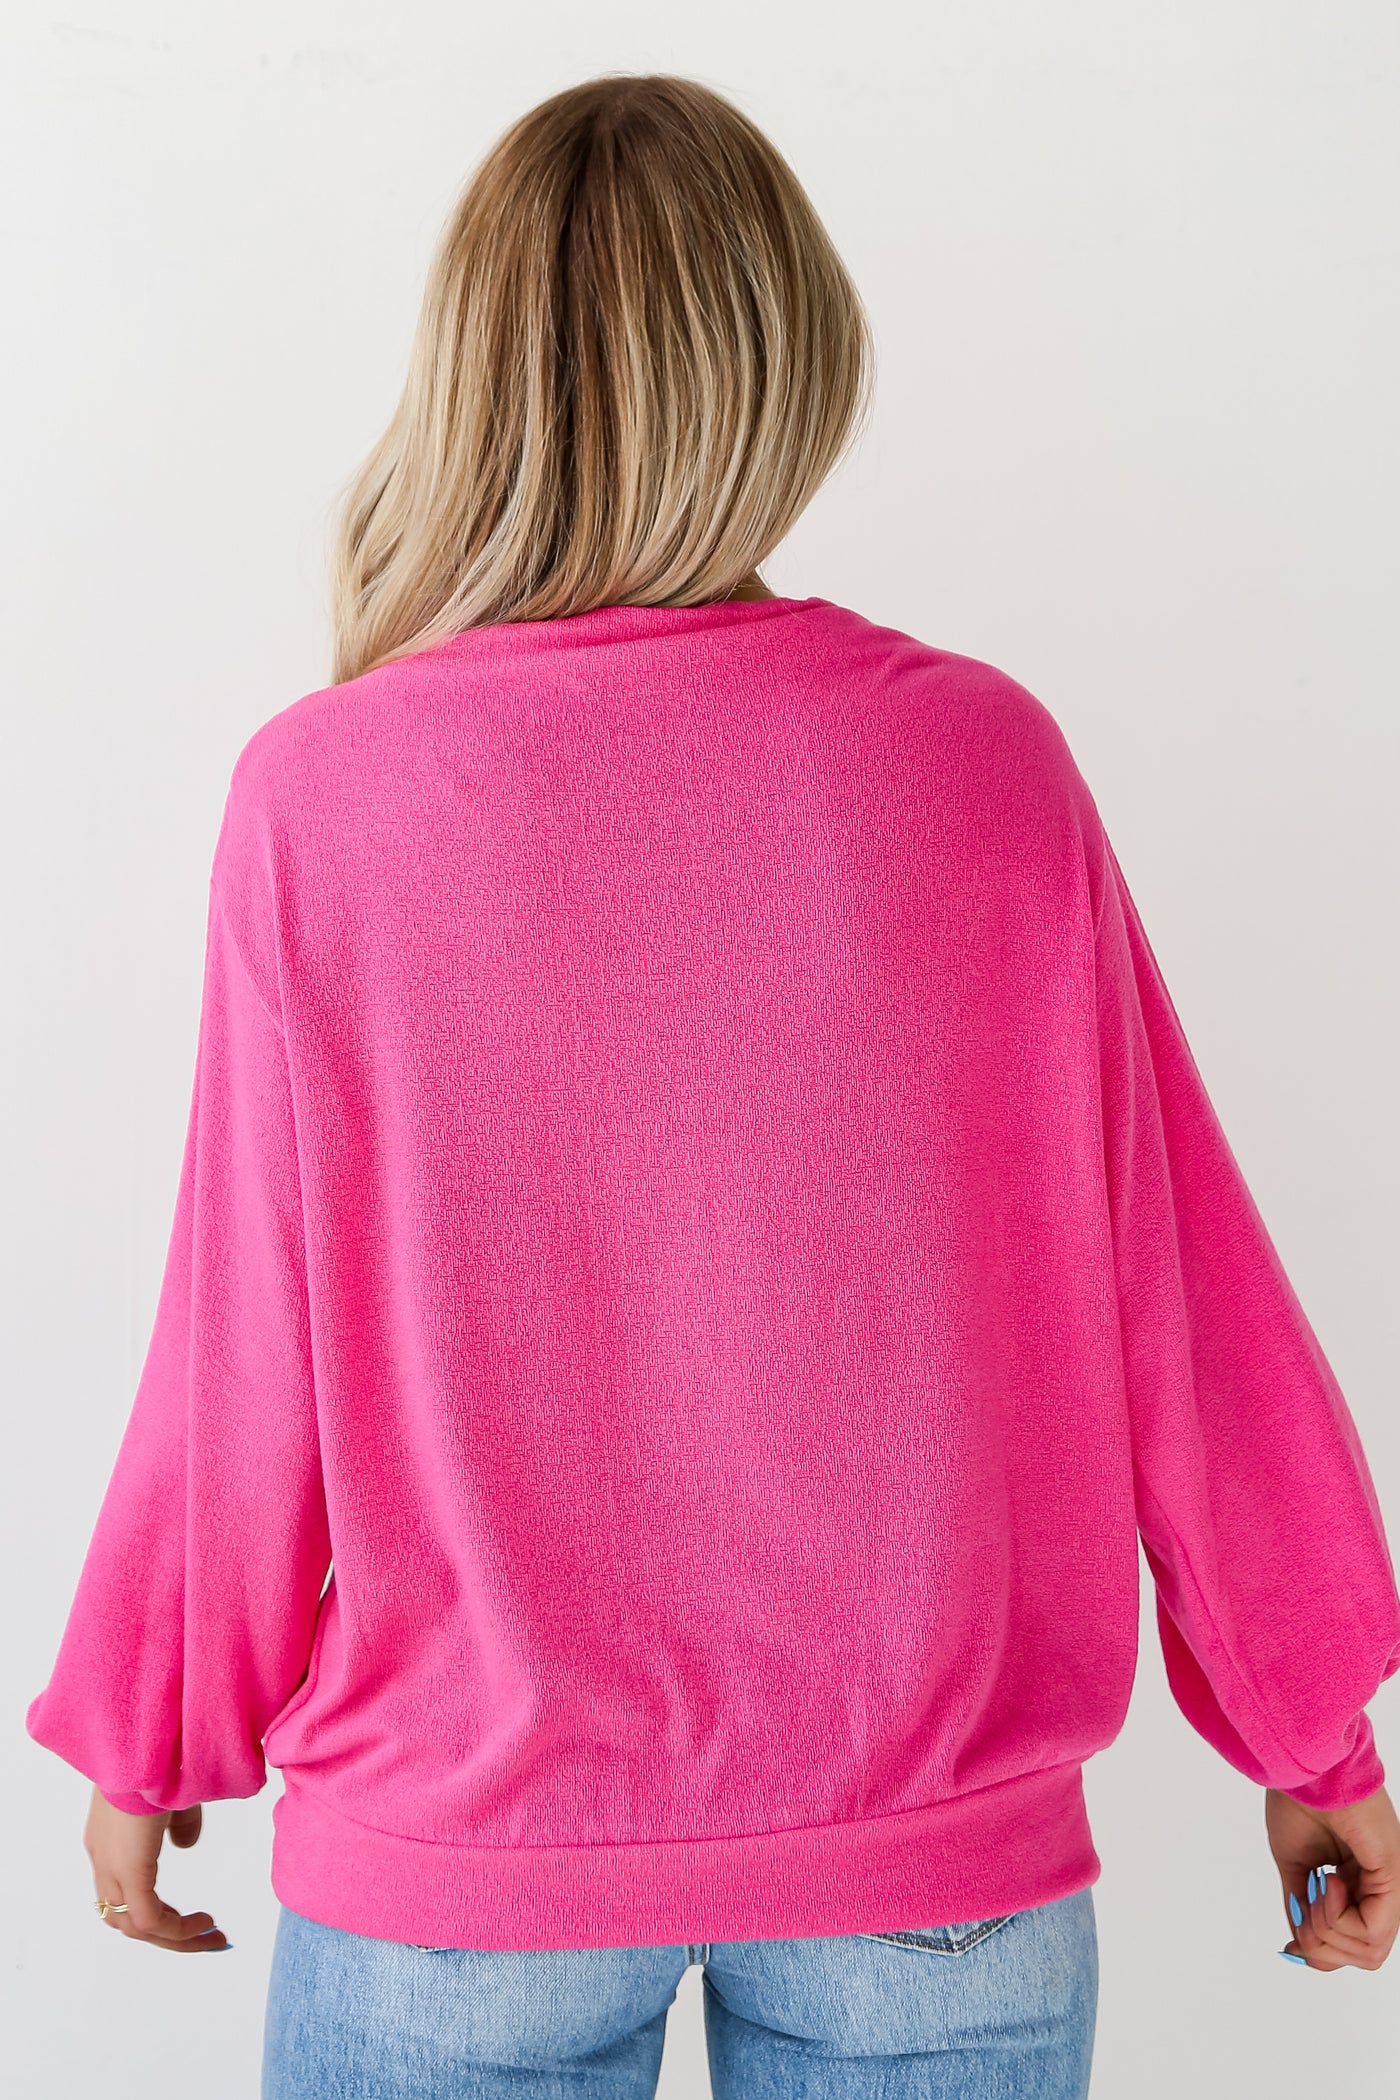 Hot Pink Lightweight Knit Top for women